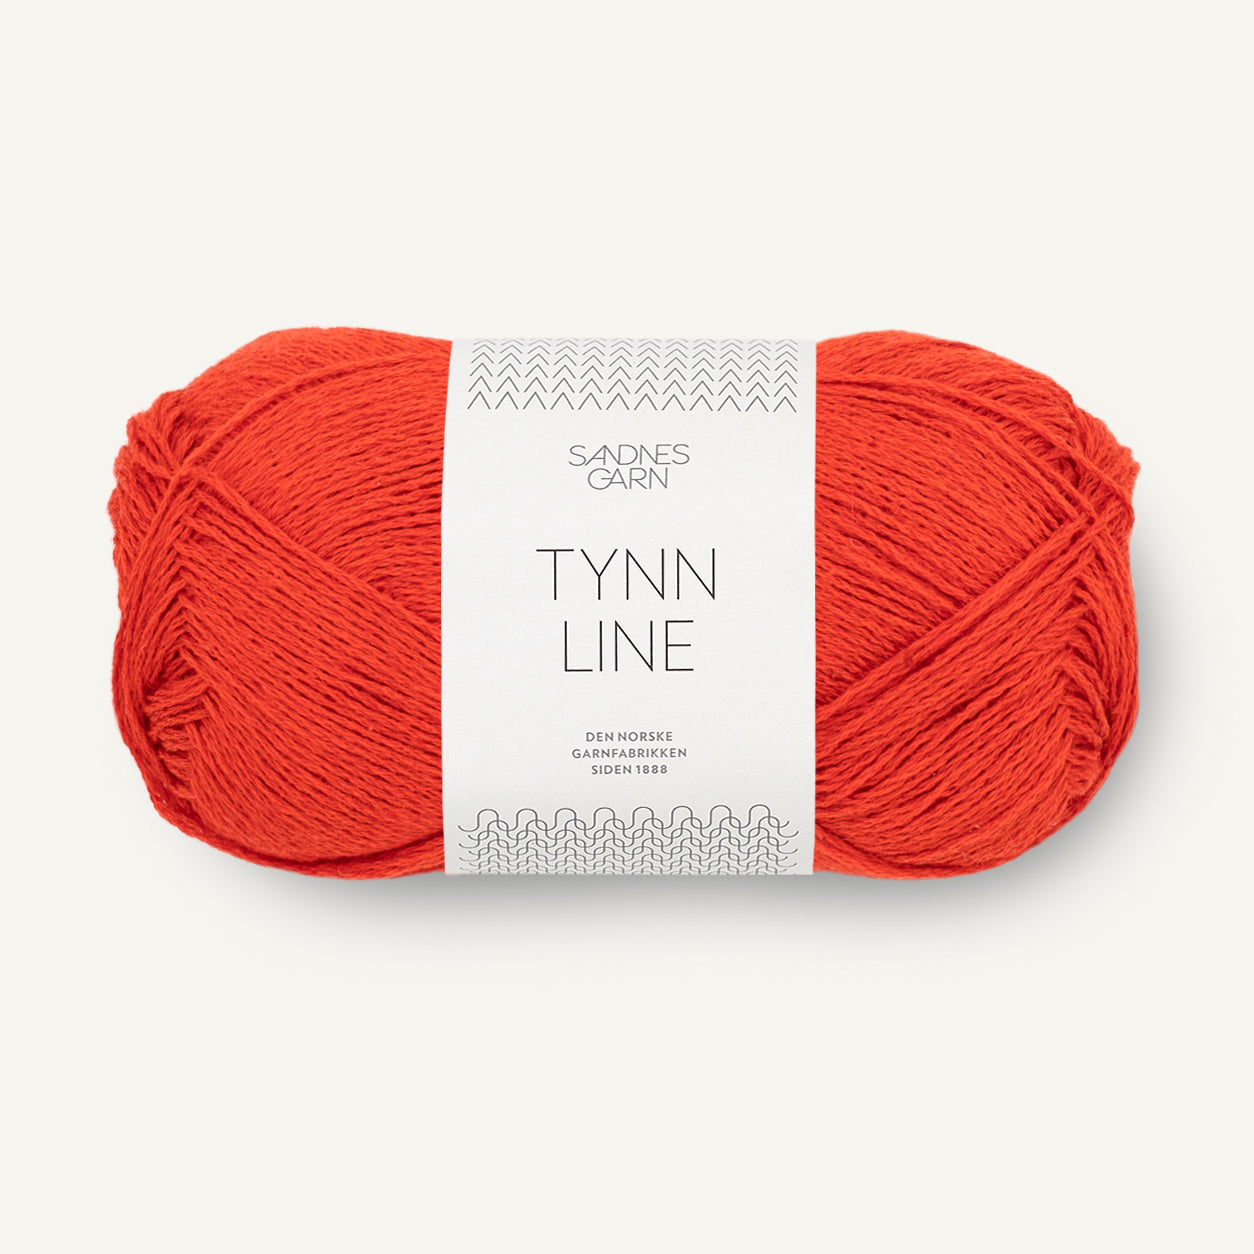 Tynn Line spicy orange [3819]